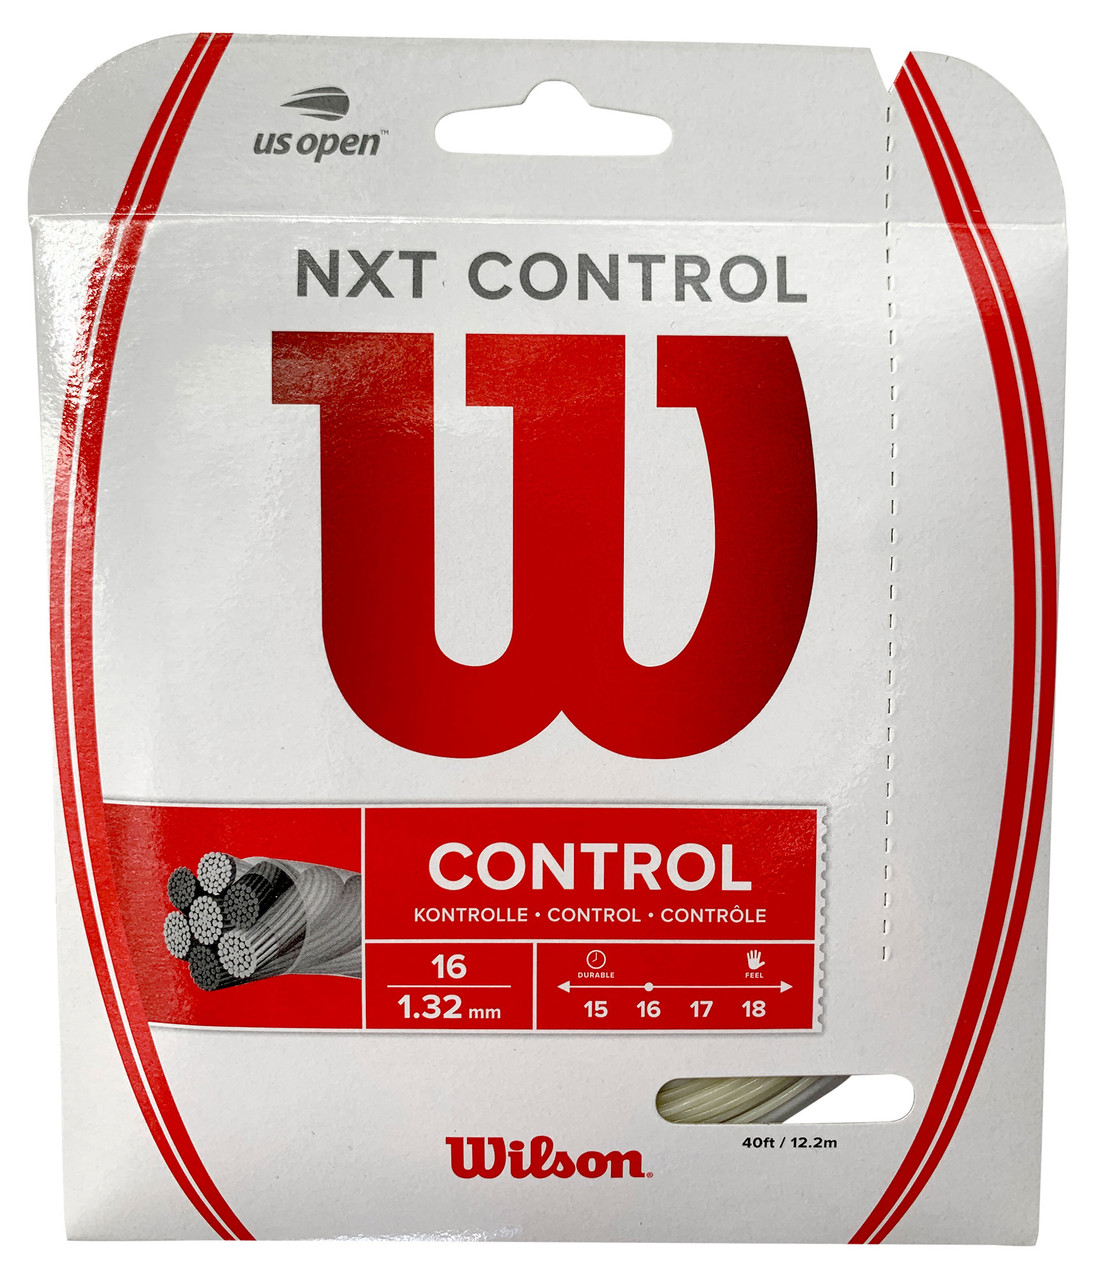 ロールガット/ウィルソン NXT Control 16(1.32mm)商品説明